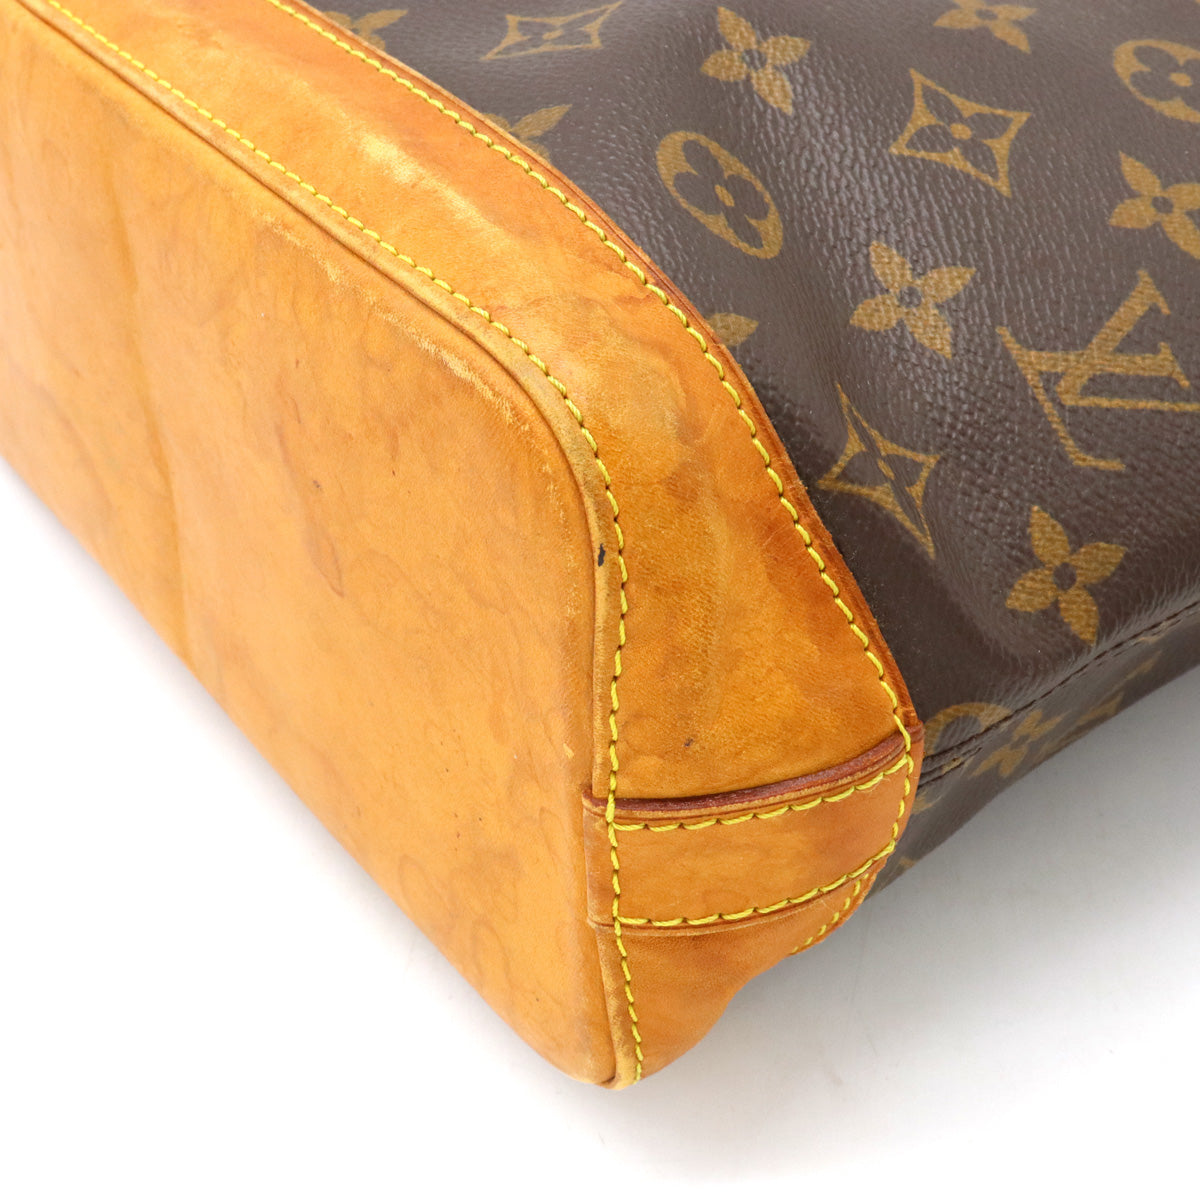 LOUIS VUITTON Monogram Lockit M40102 Handbag from Japan